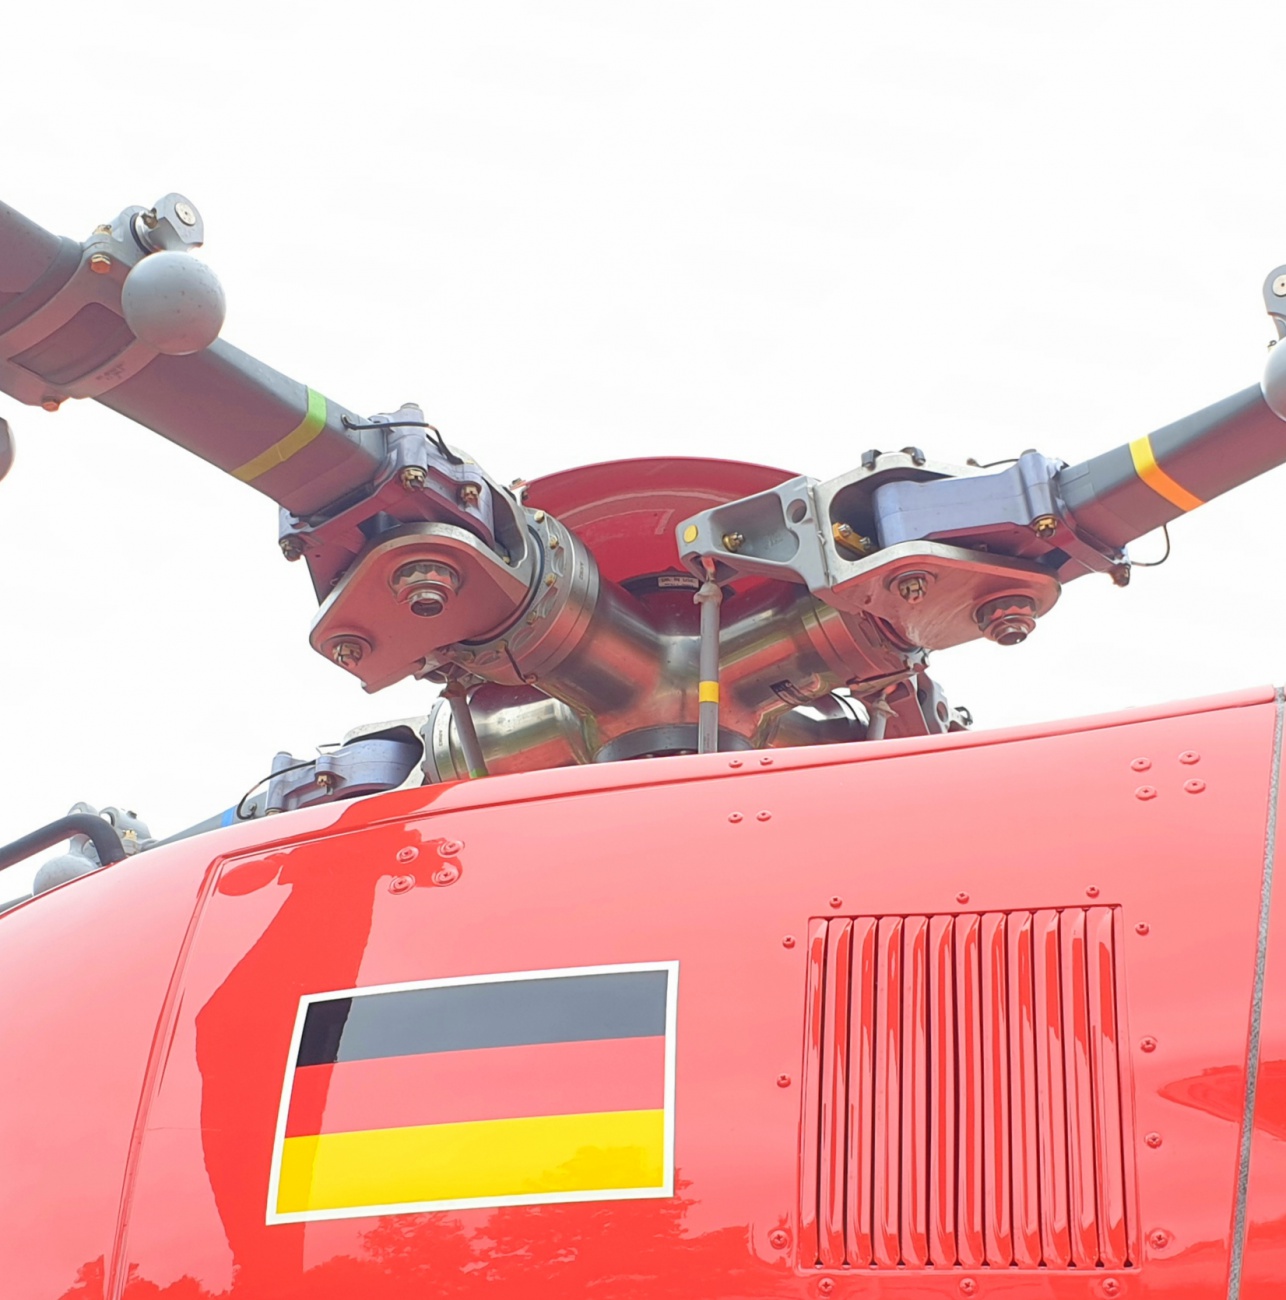 Foto: Martin Zehrer - Rettungshubschrauber in Kemnath gelandet...<br />
Der Rotorkopf mit den Rotorblättern.<br />
<br />
Bilder mit freundlicher Genehmigung durch den Piloten! 